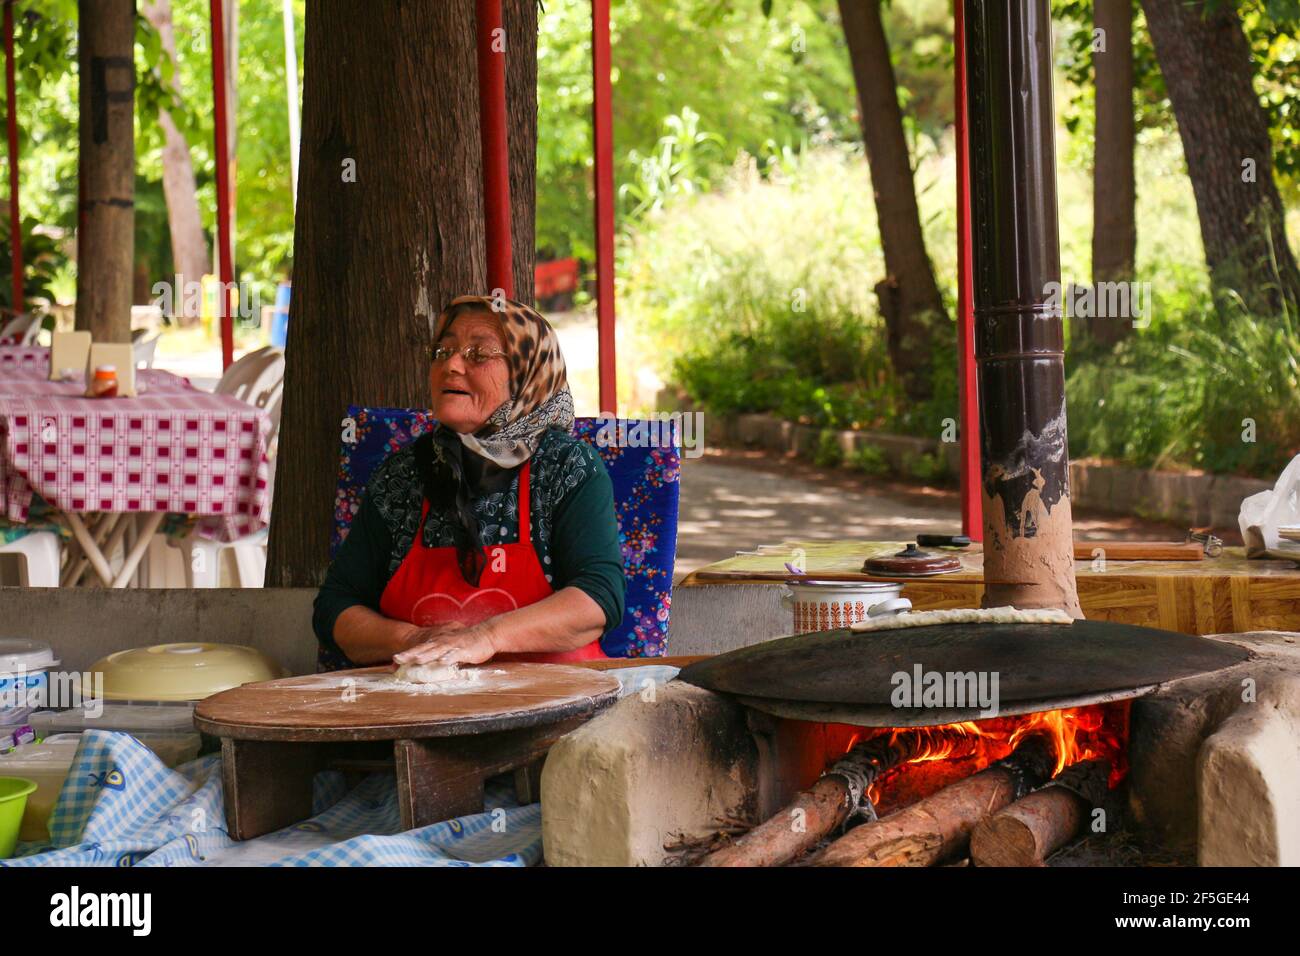 ANTALYA, TURQUIE - 30 mai 2015 : traditionnellement habillée, la vieille femme est makingTurkish crêpes au feu dans le parc. Banque D'Images